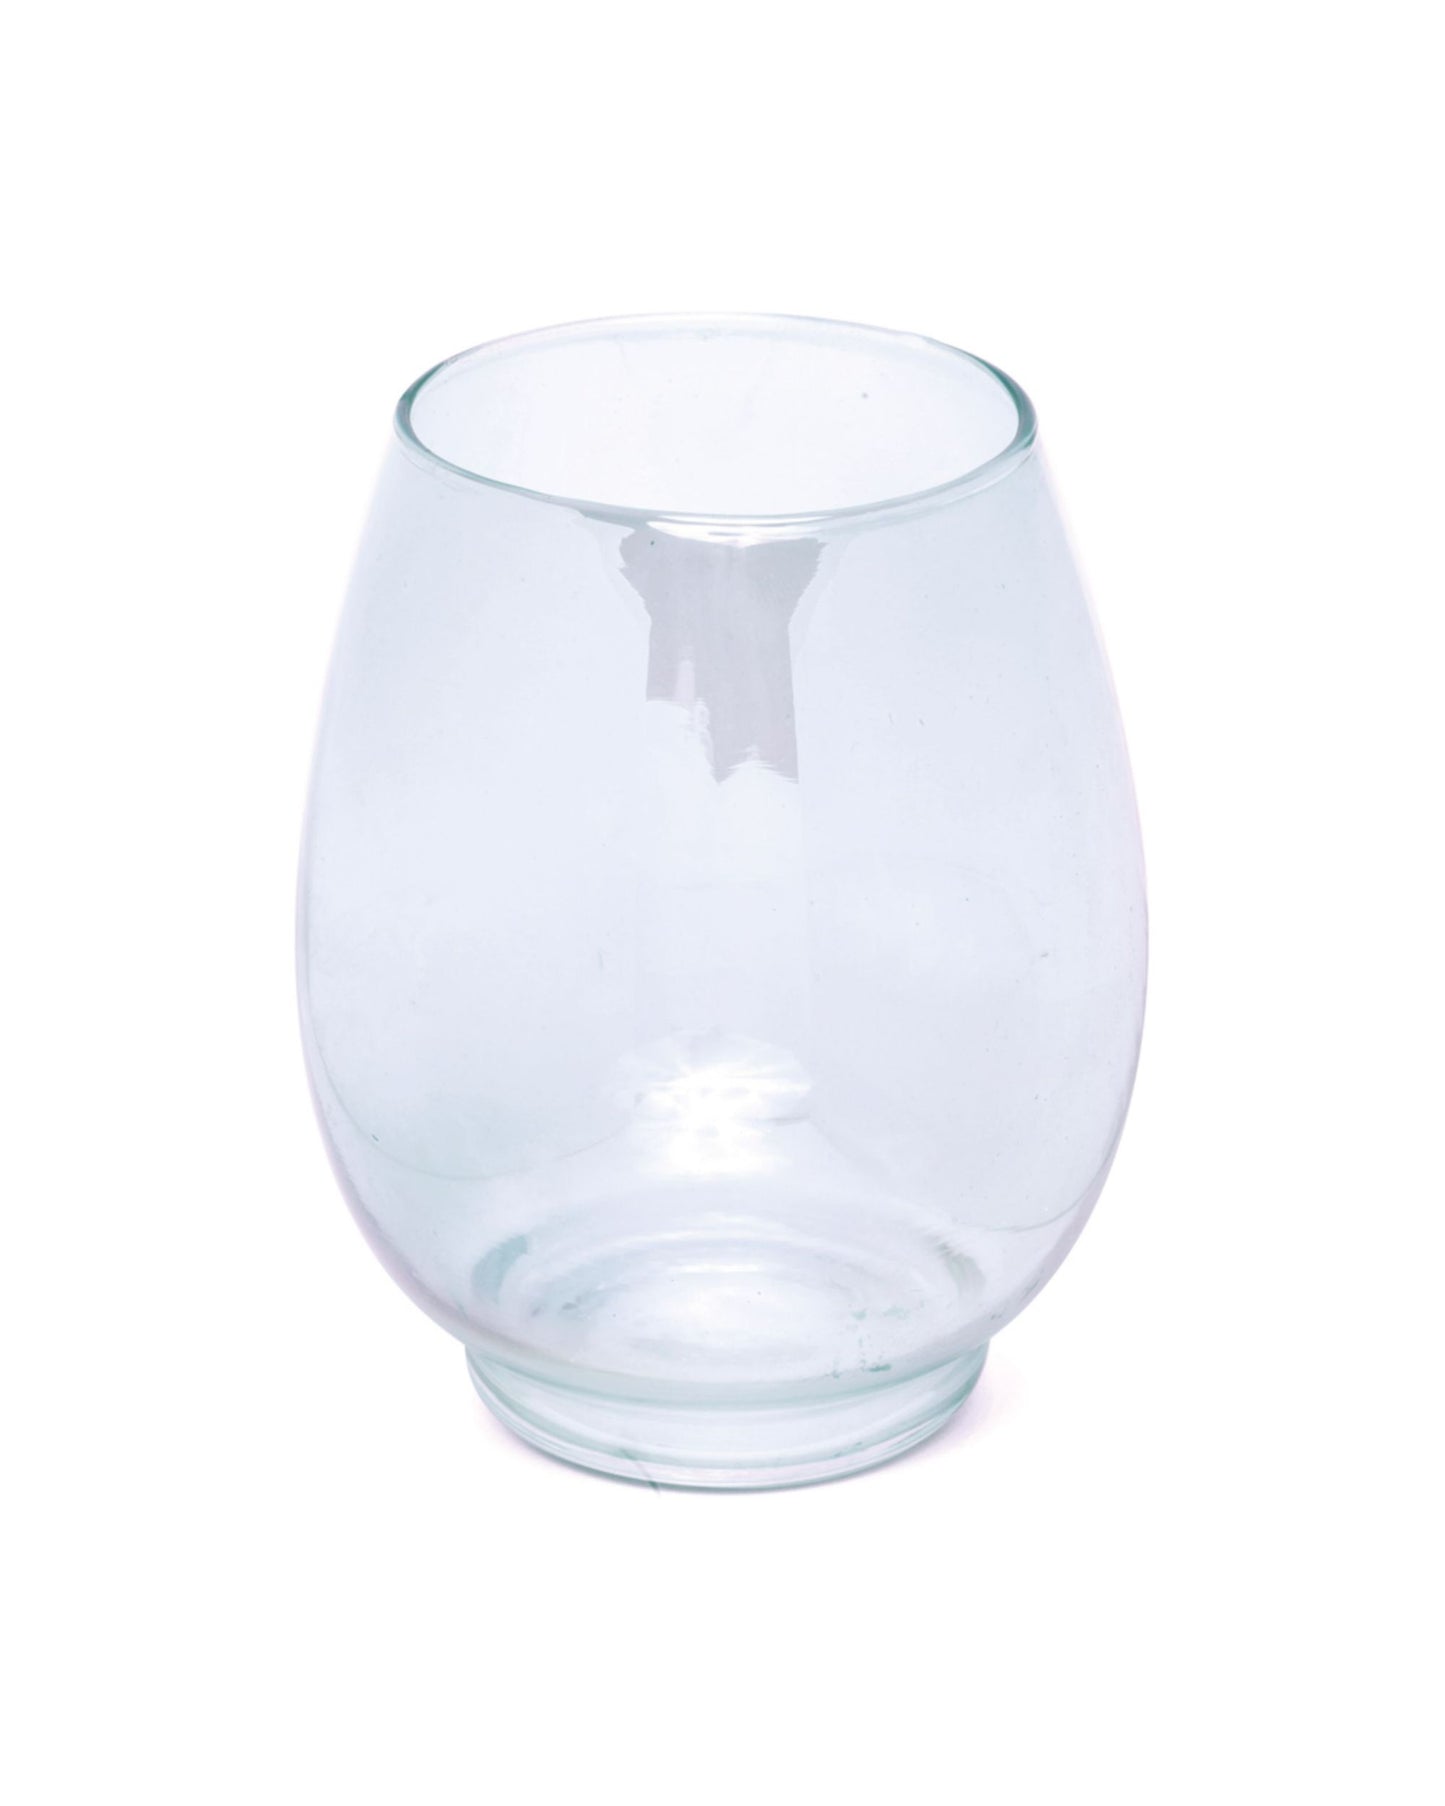 Vaso oval vidro